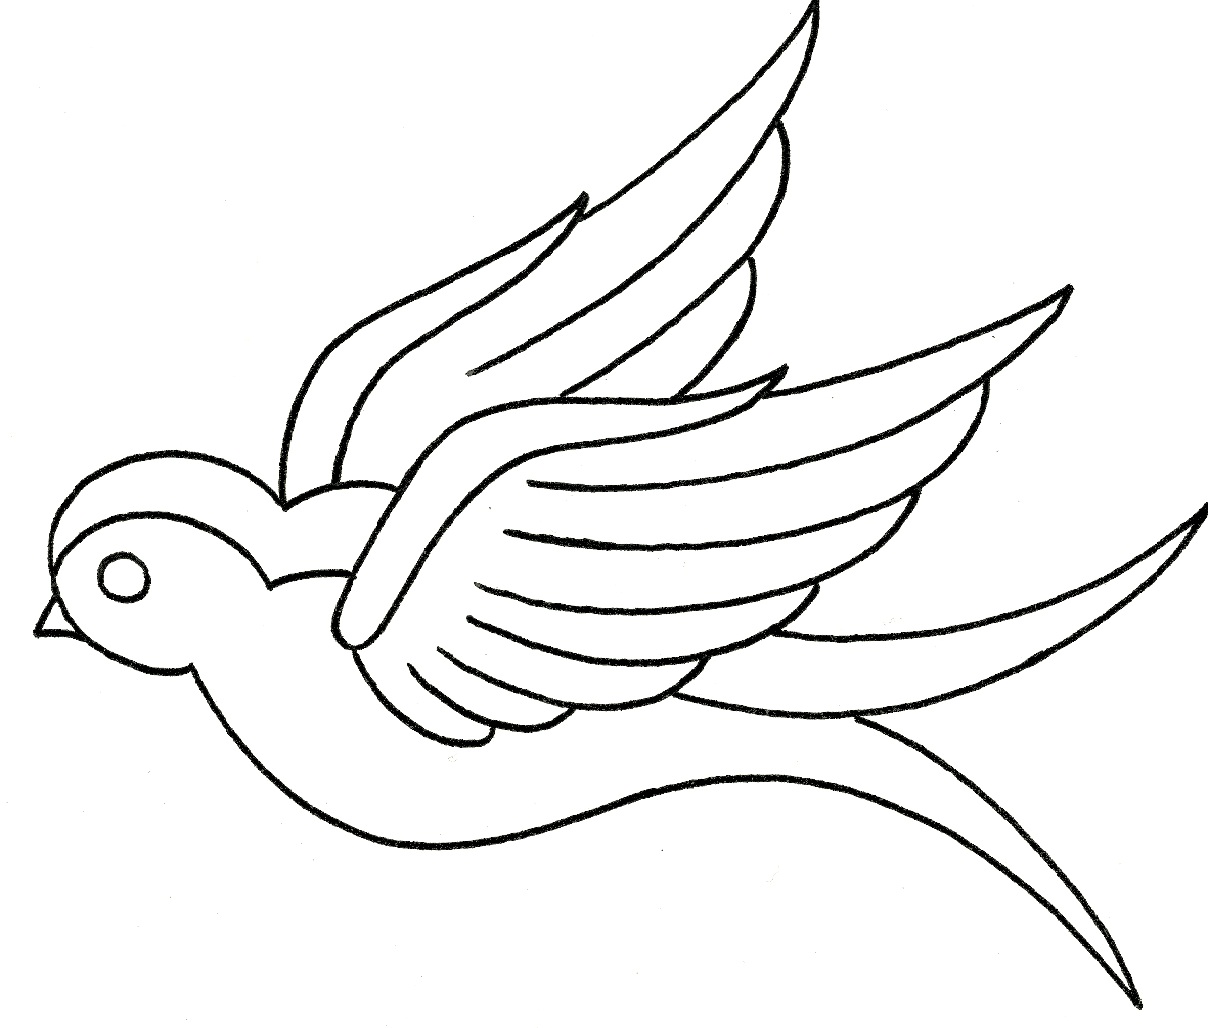 Simple cartoon black-contour bird tattoo design